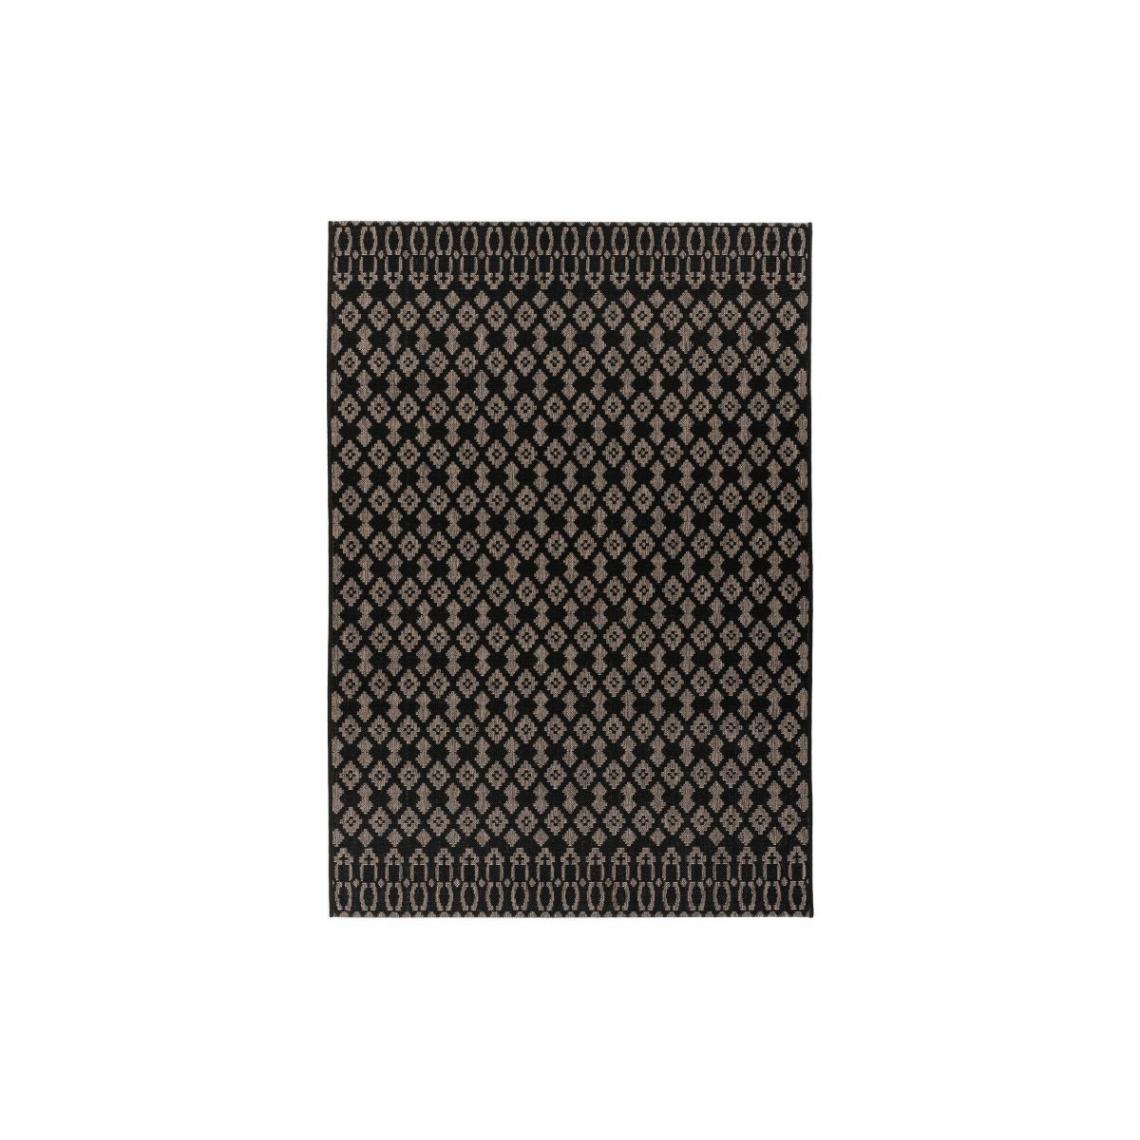 Bobochic - BOBOCHIC Tapis poil court rectangulaire LORIS motif graphique Noir 200x290 - Tapis